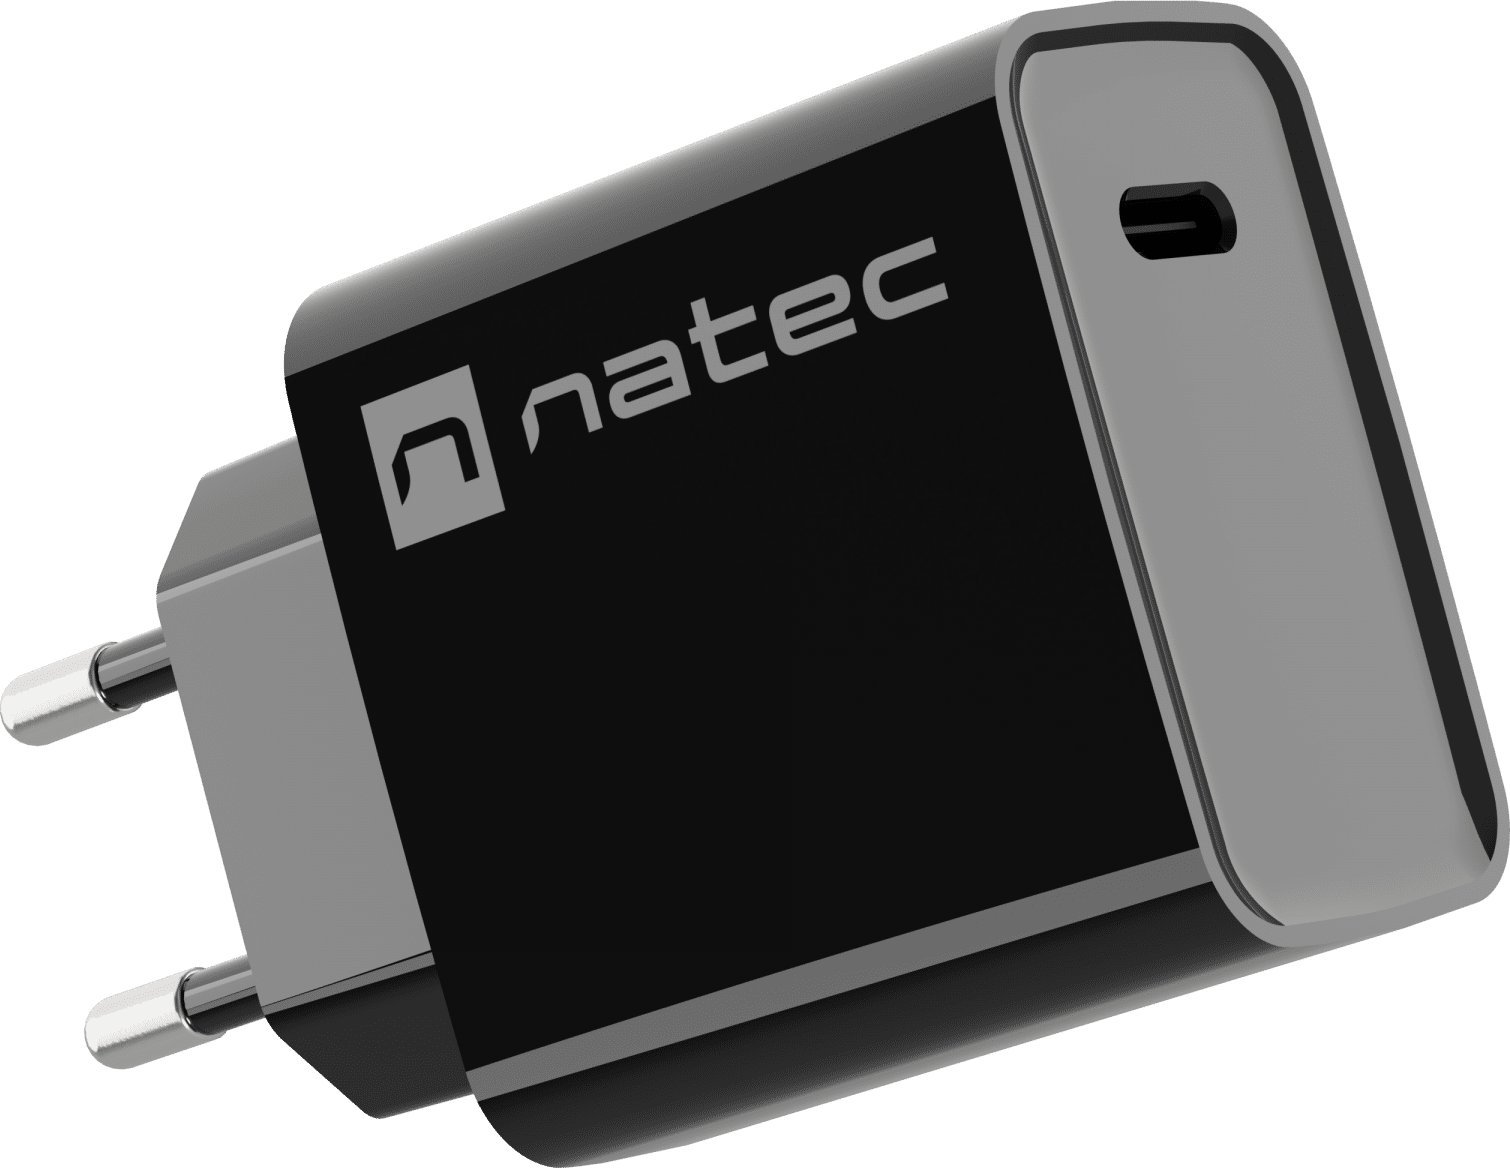 NATEC USB CHARGER RIBERA USB-C 20W PD BLACK iekārtas lādētājs